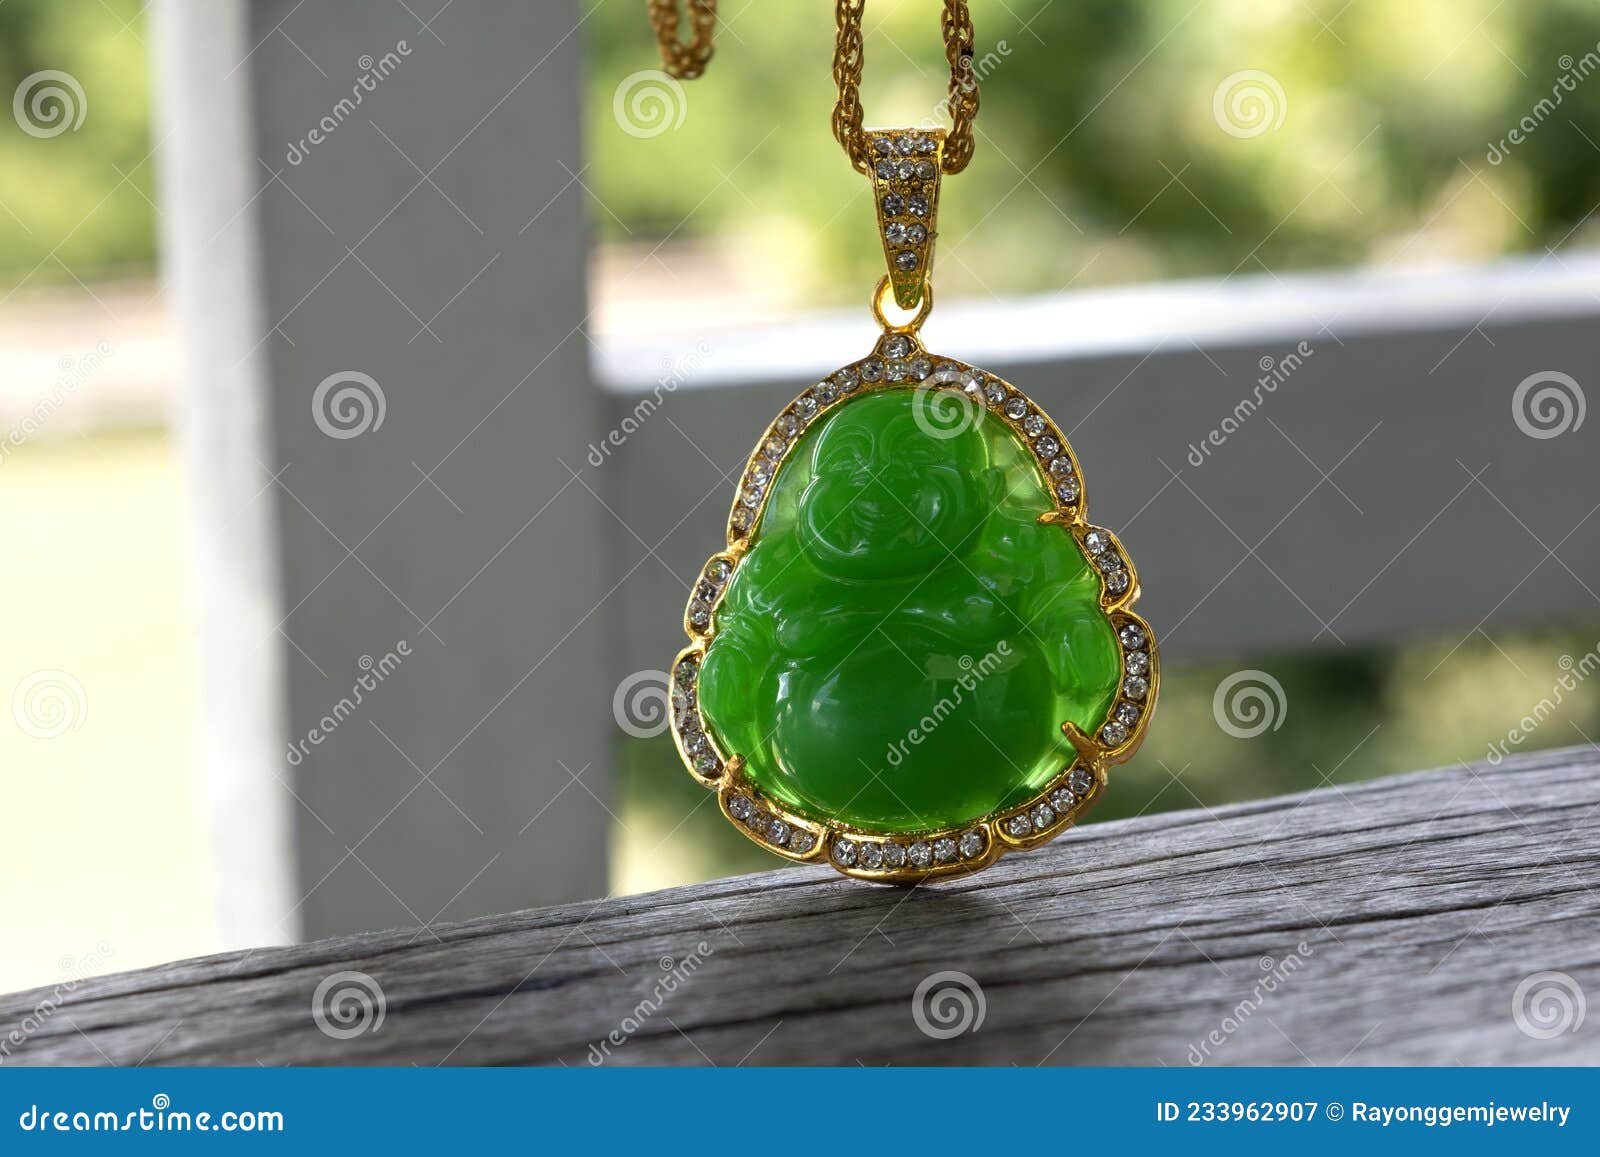 Joyas De Jade Un Dorado Adornado Con Jade Verde Y Raro Ha Sido Un Accesorio Popular de archivo - Imagen de colgante, ornamento: 233962907